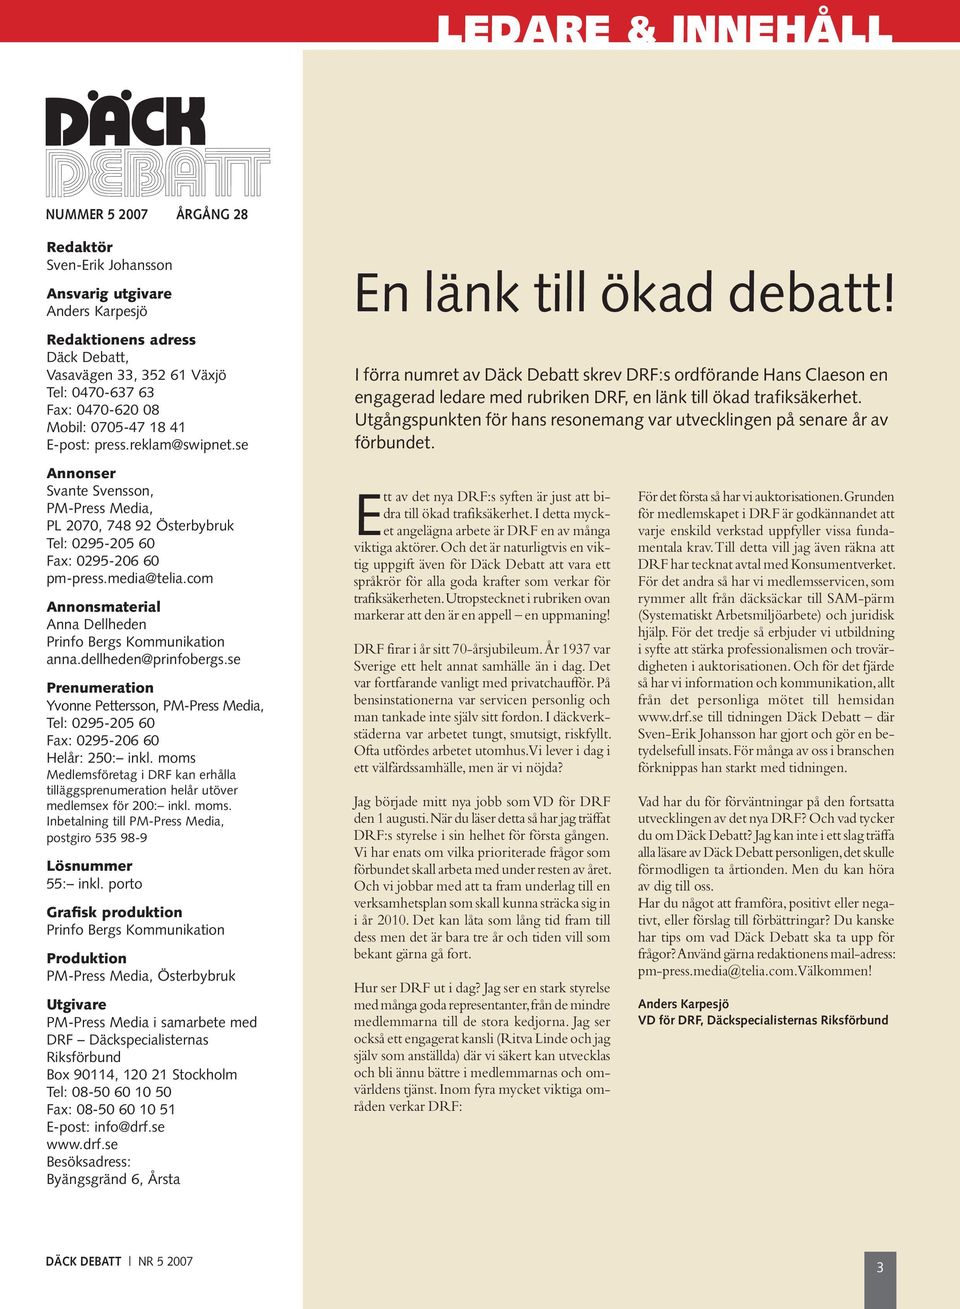 I förra numret av Däck Debatt skrev DRF:s ordförande Hans Claeson en engagerad ledare med rubriken DRF, en länk till ökad trafiksäkerhet.